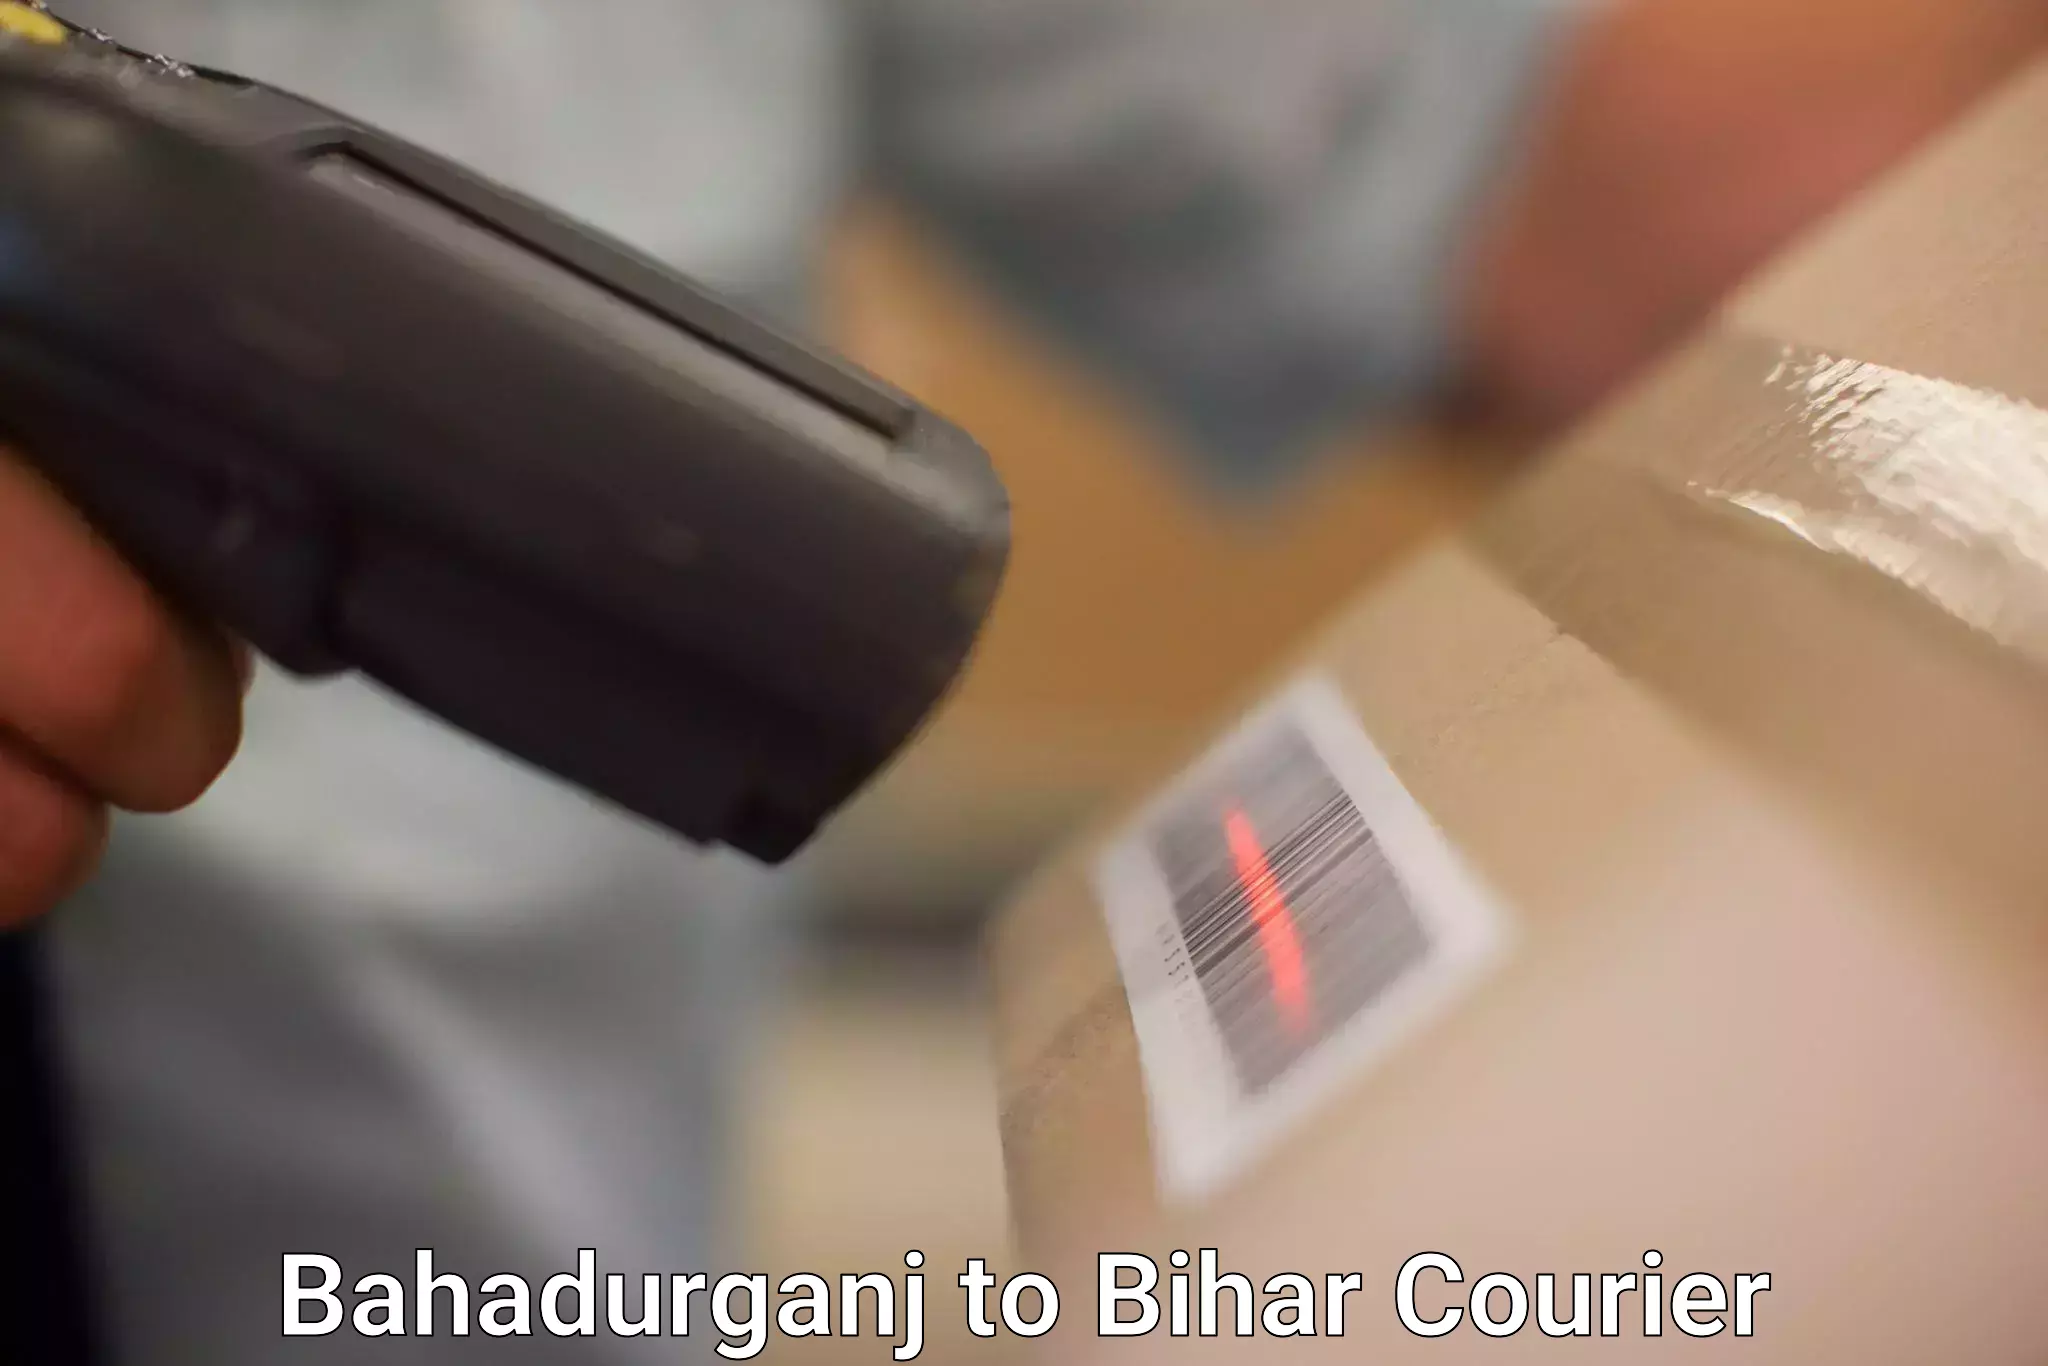 Efficient order fulfillment Bahadurganj to Bihar